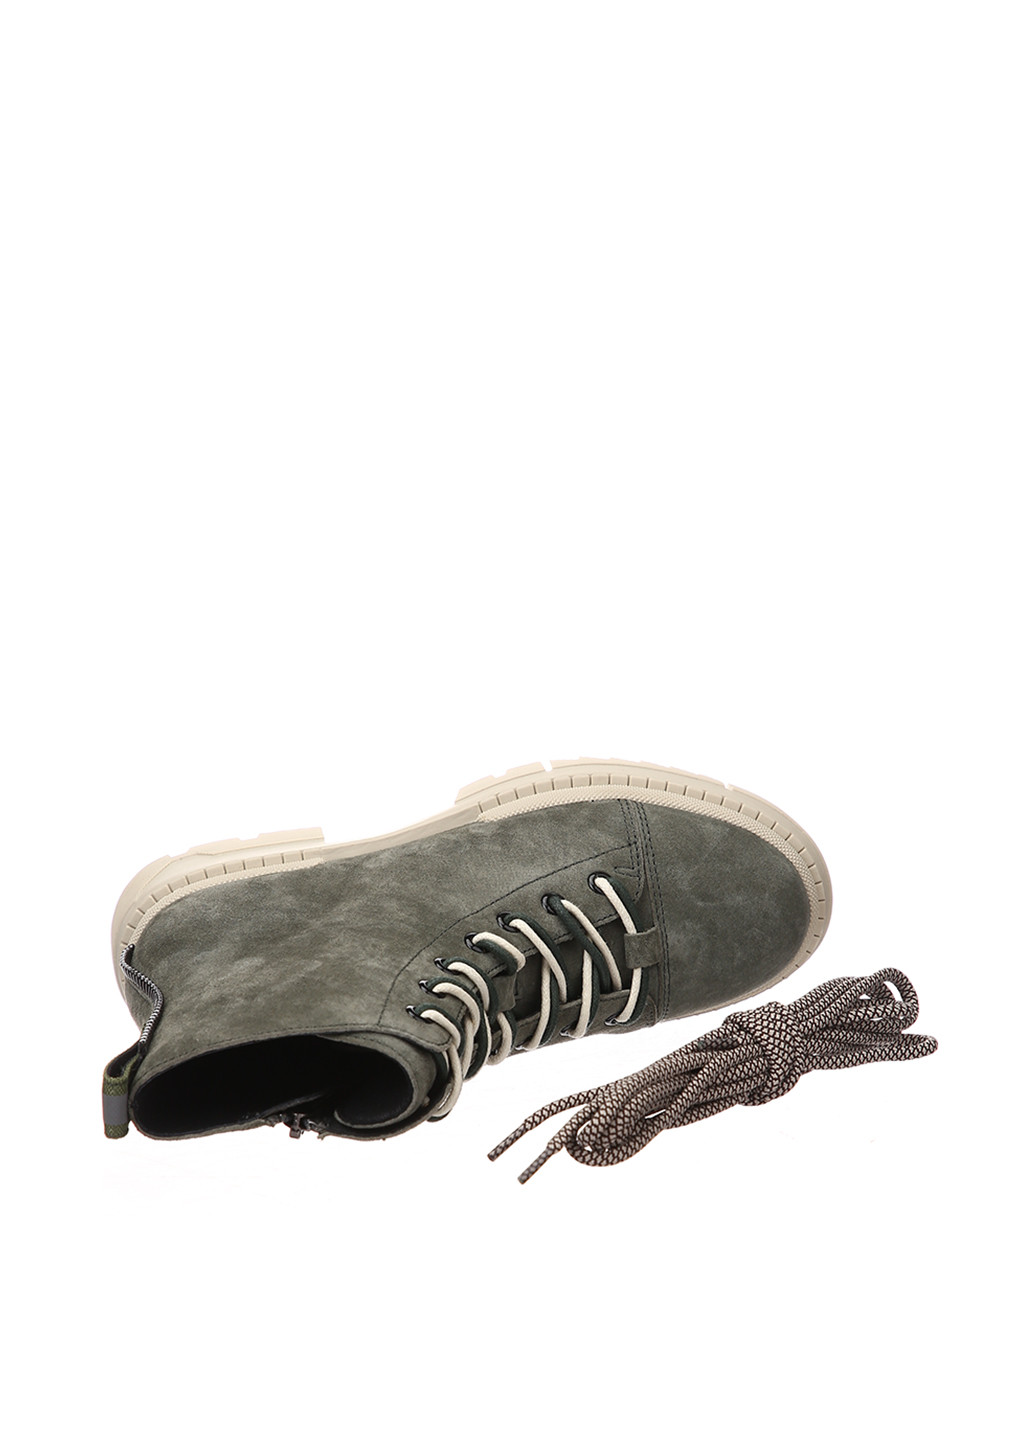 Осенние ботинки Anemone с молнией, со шнуровкой, на тракторной подошве из натуральной замши